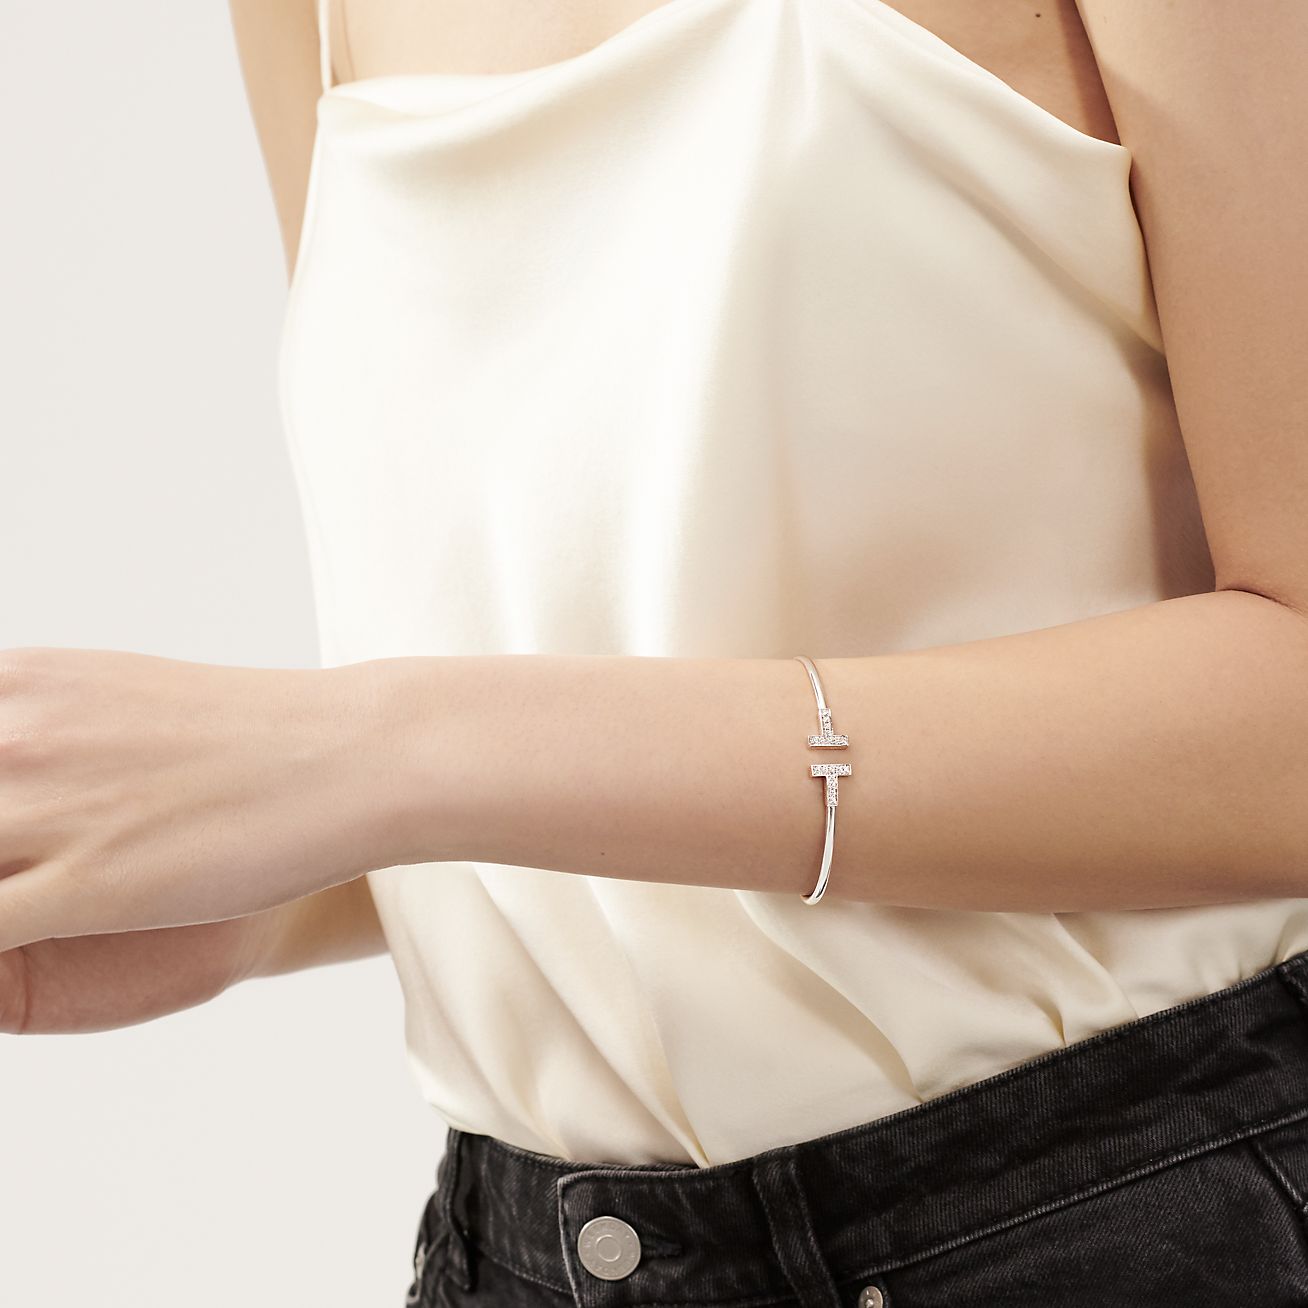 tiffany t wire bracelet with diamonds